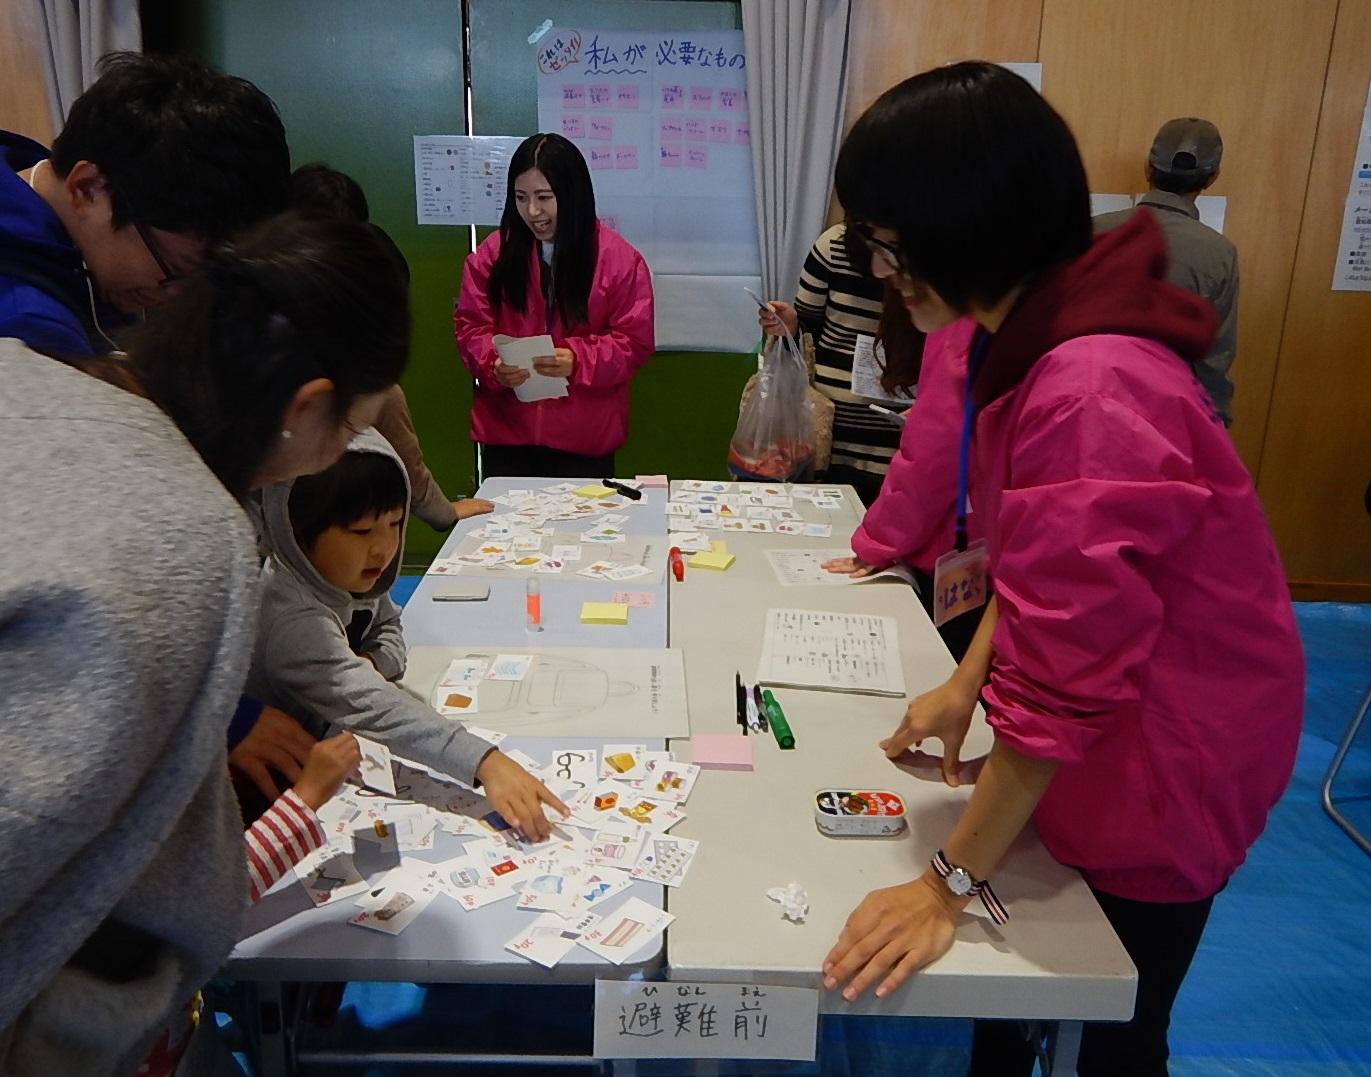 長机の上に広げられたカードを指さしている参加者の子供とその様子を見守っている保護者とピンク色の上着を着た看護学生の写真